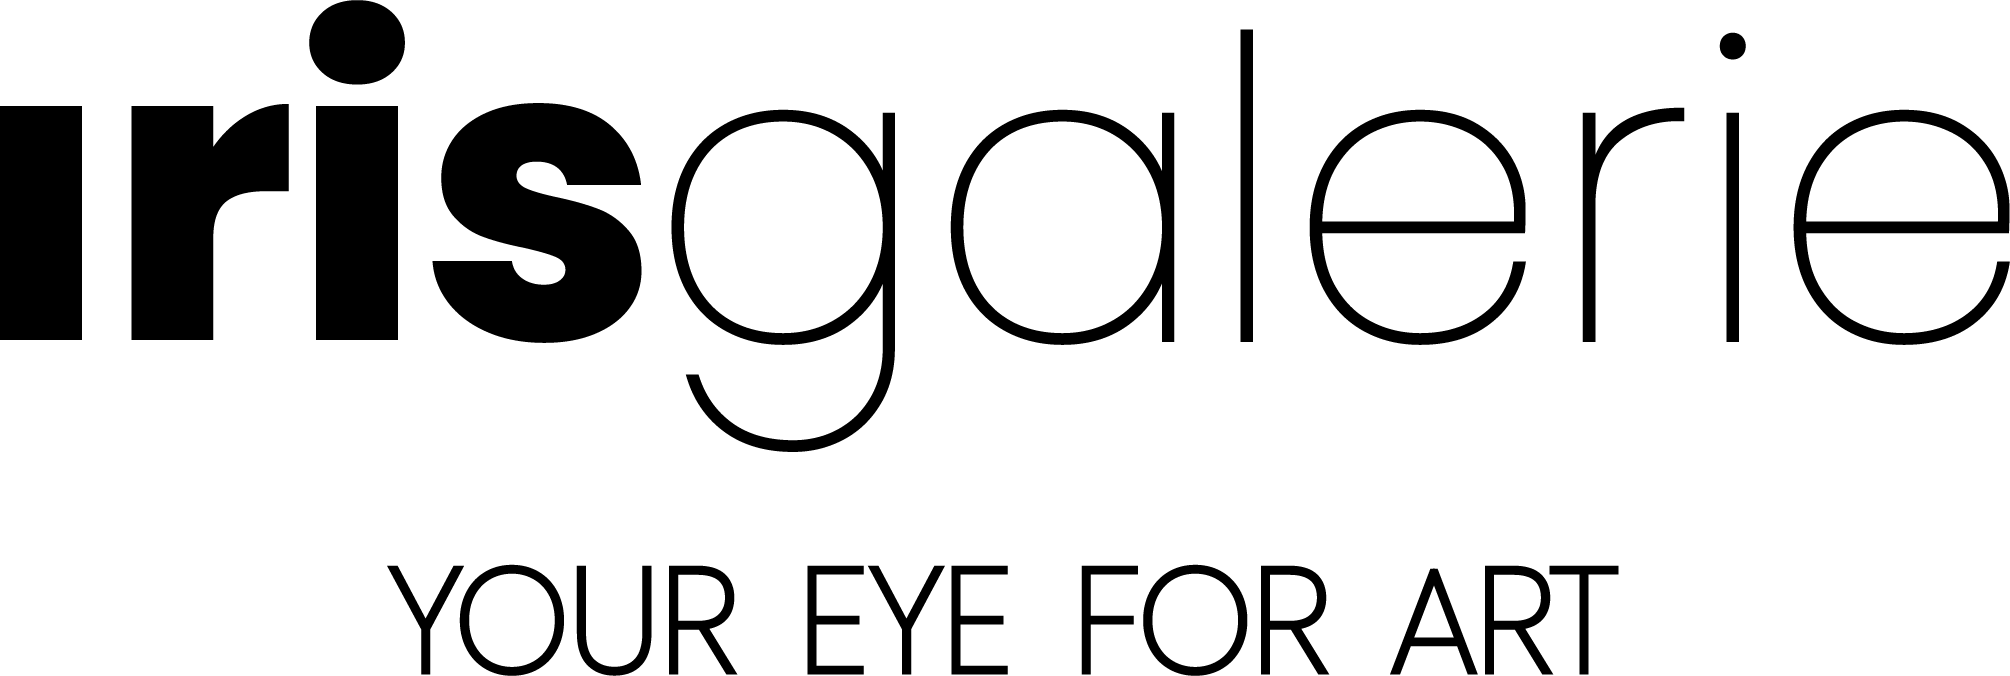 Iris galerie logo with tagline